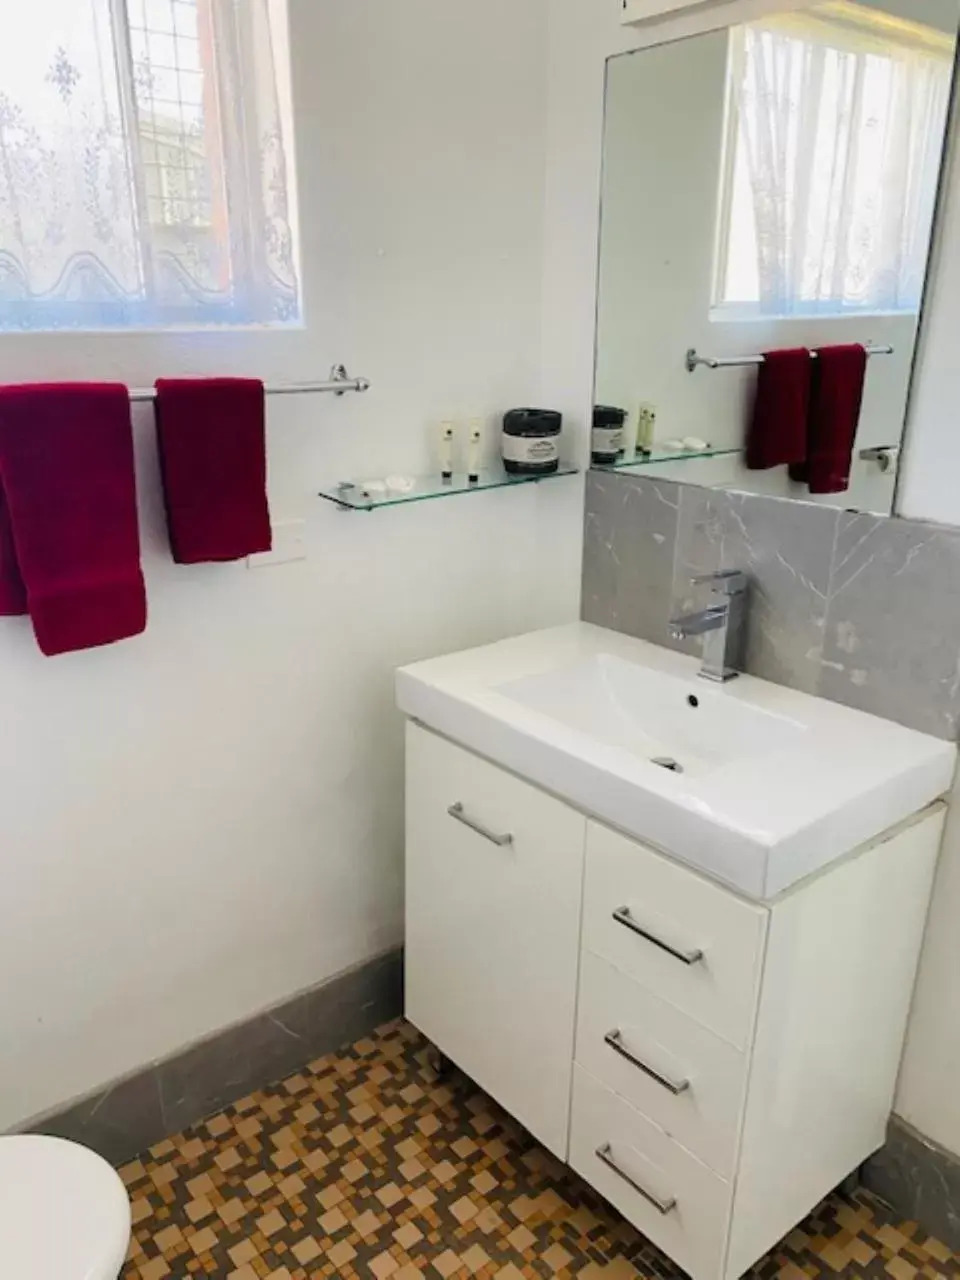 Bathroom in Tamworth Budget Motel